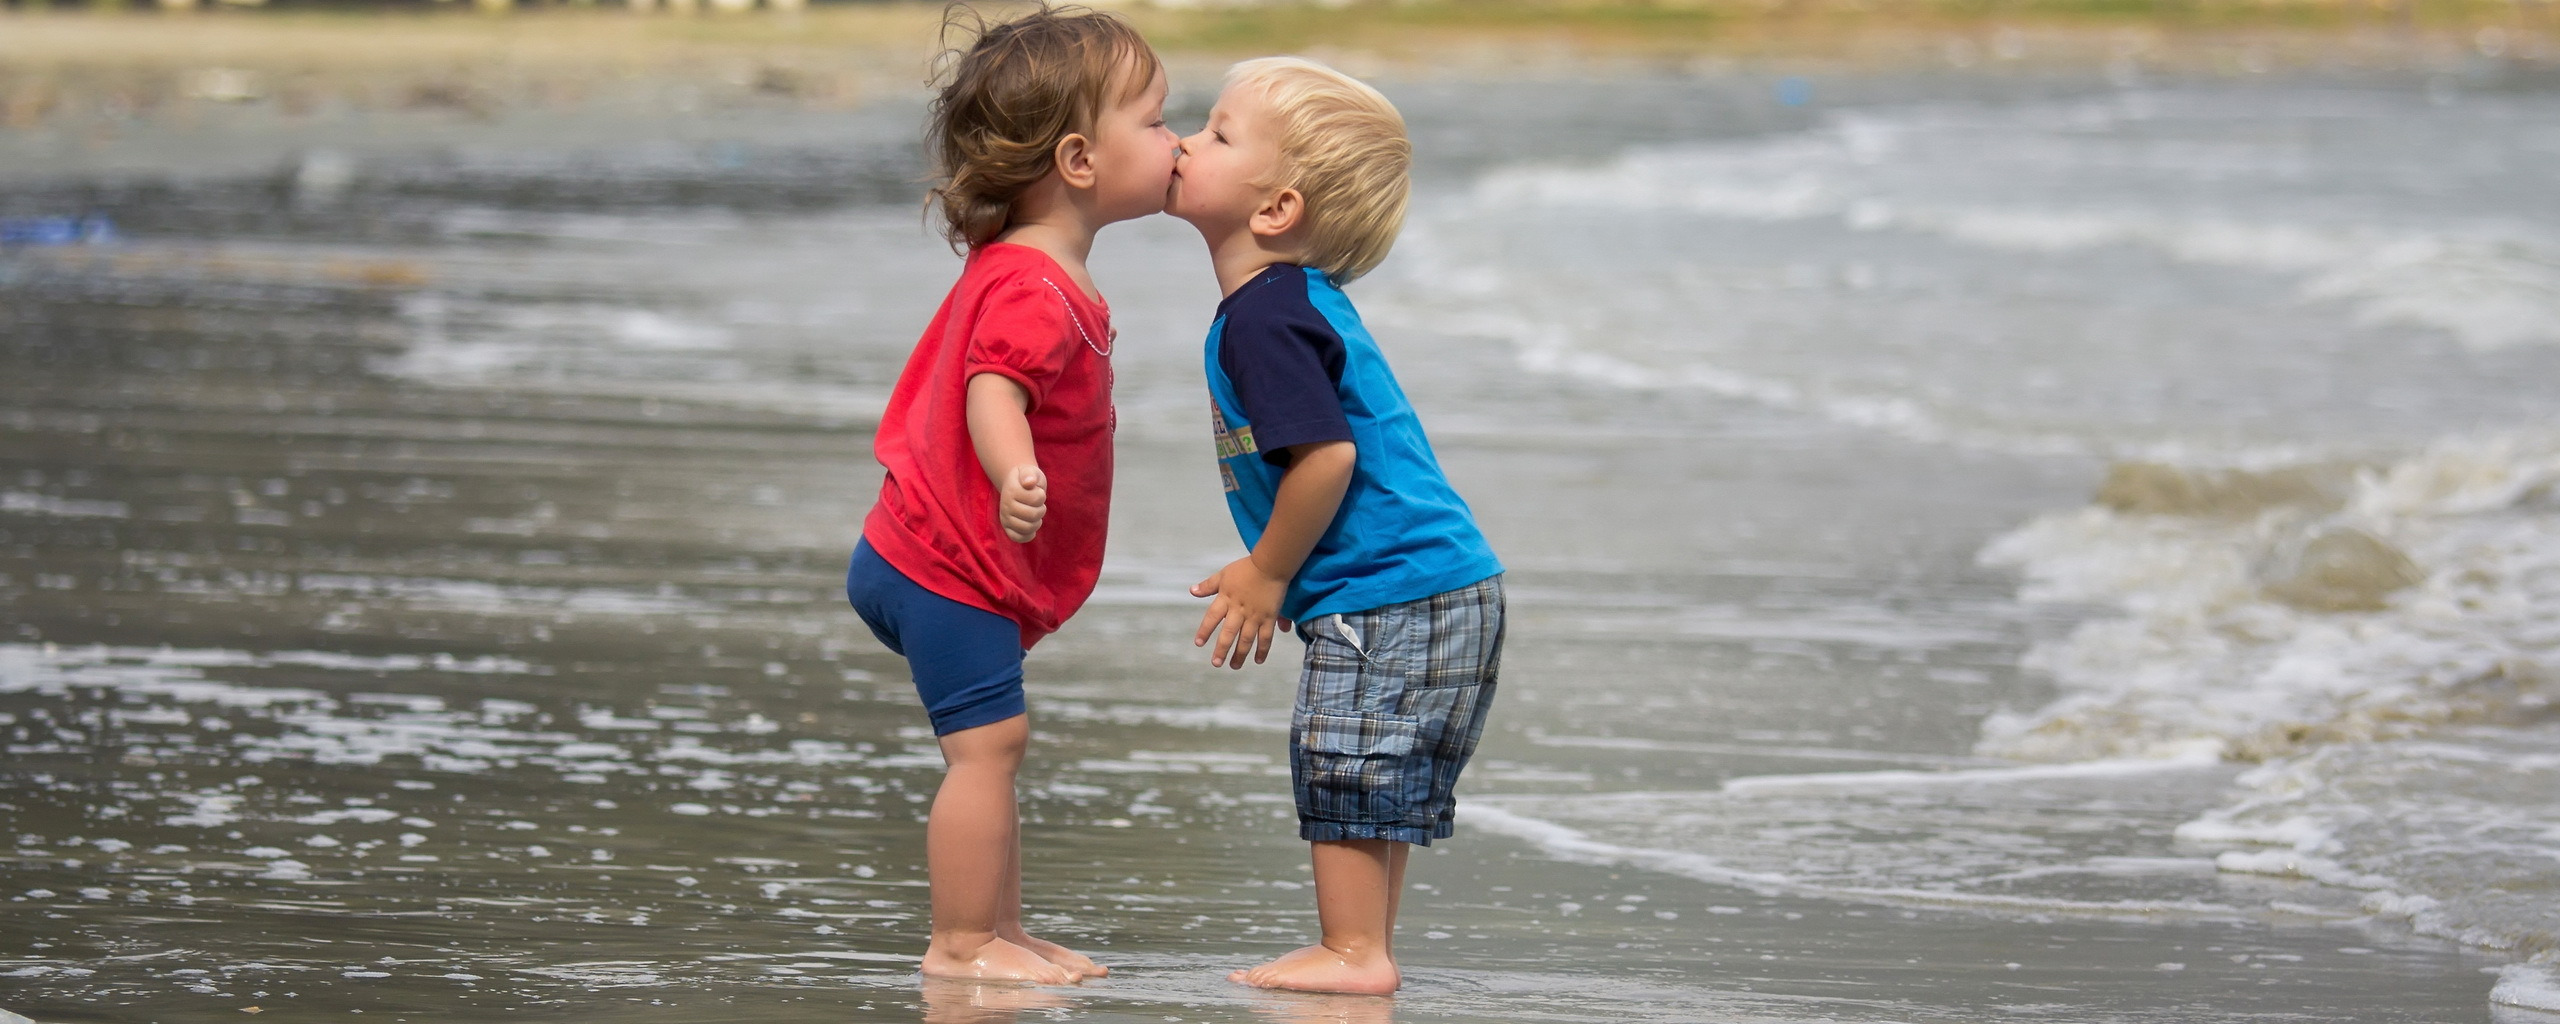 Песня мальчик целуется. Любовь между детьми. Малыши целуются. Поцелуй картинка для детей. Детский поцелуй на пляже.